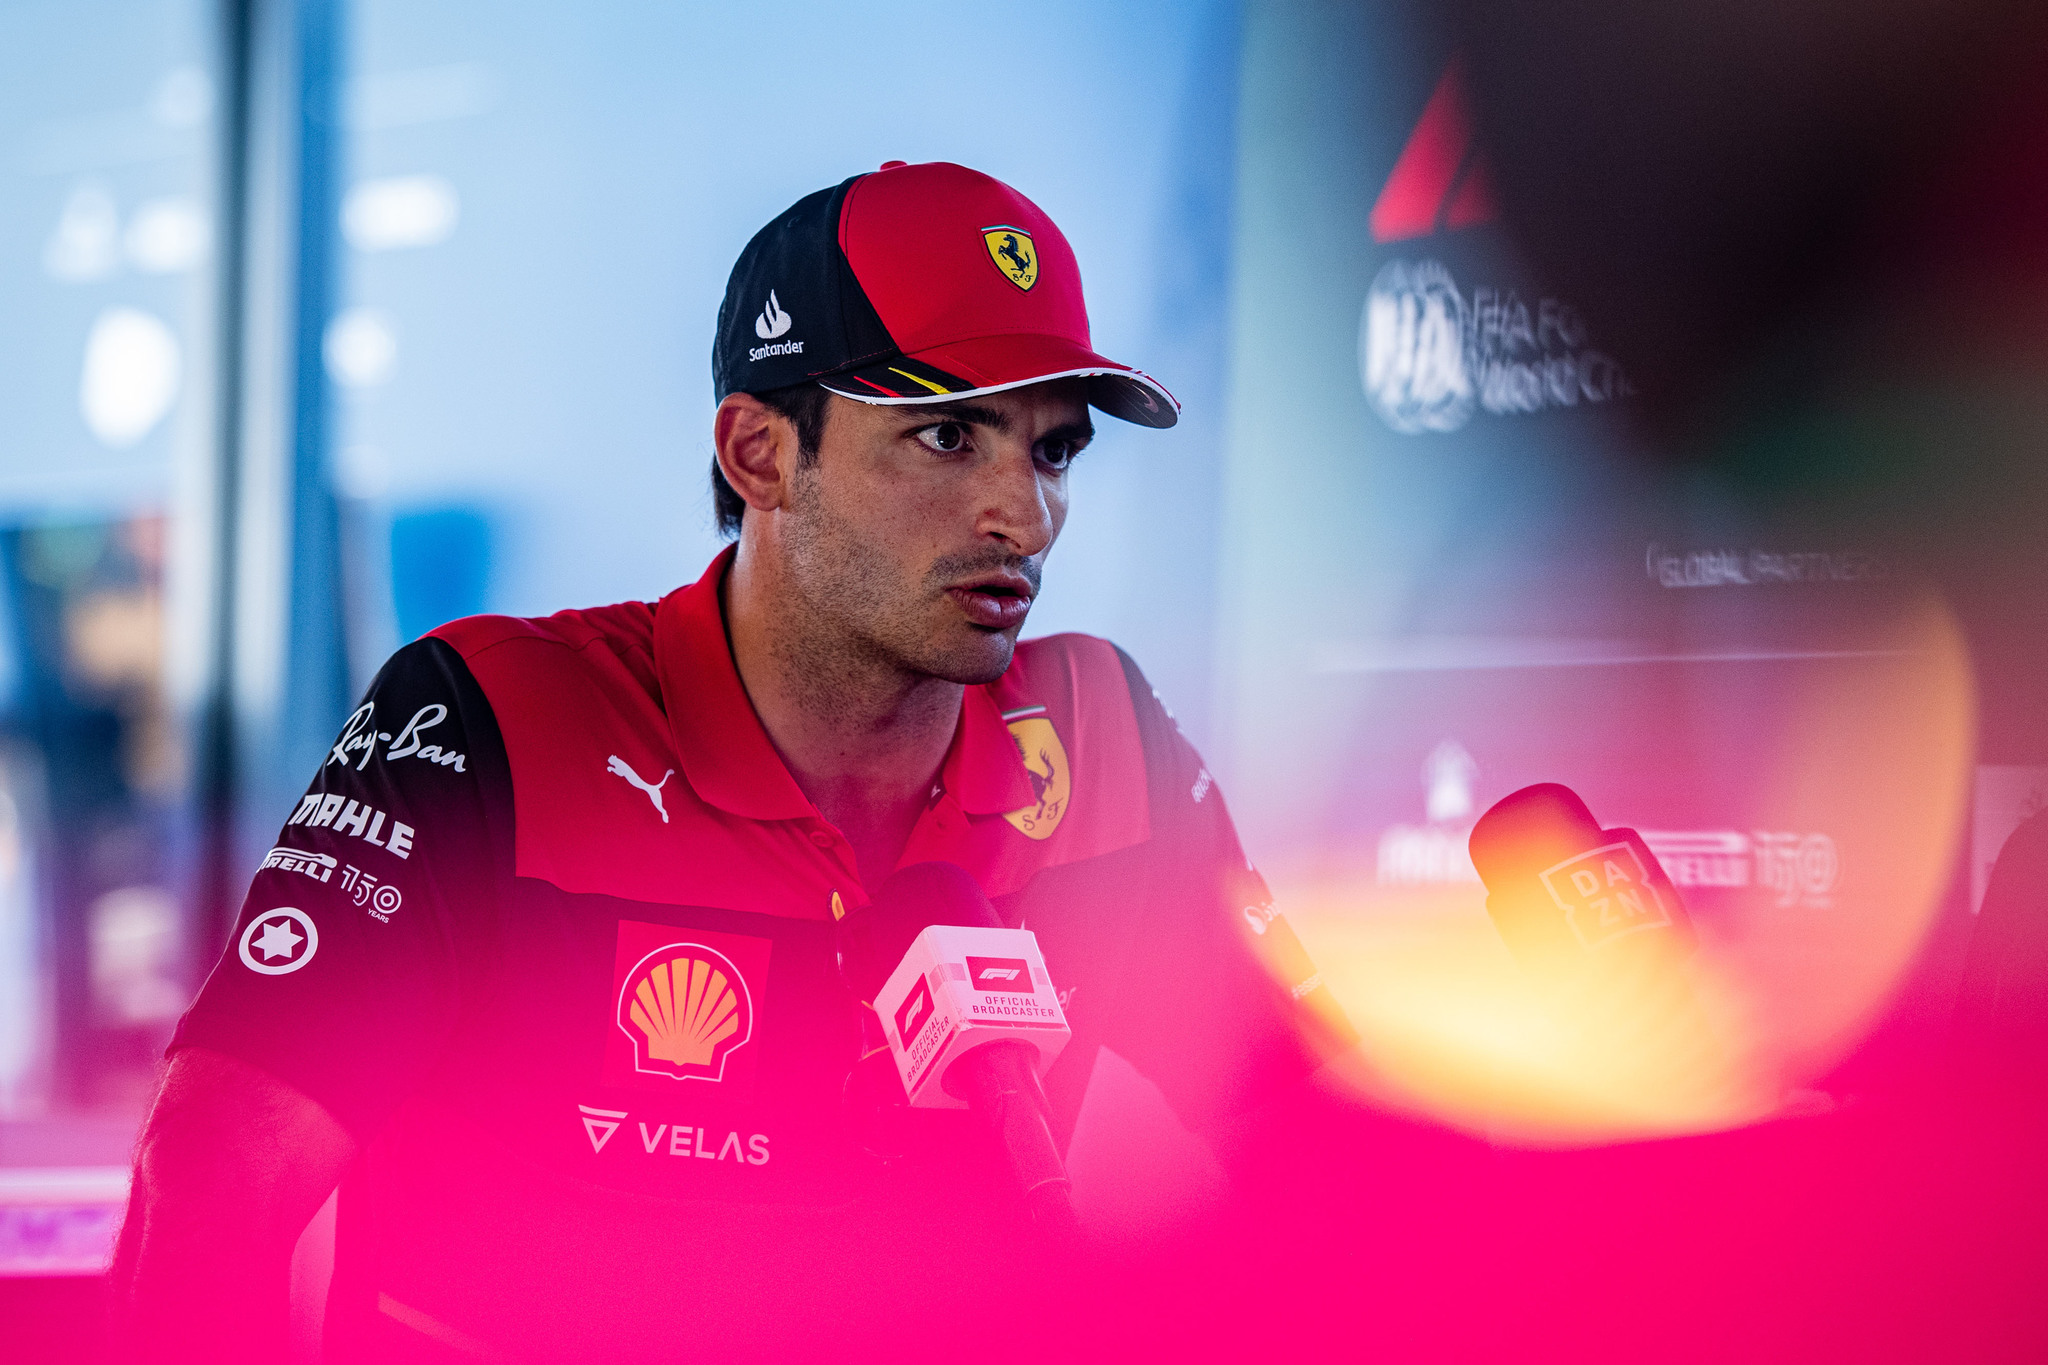 Sainz: "Me centro ya en preparar el coche para la carrera"